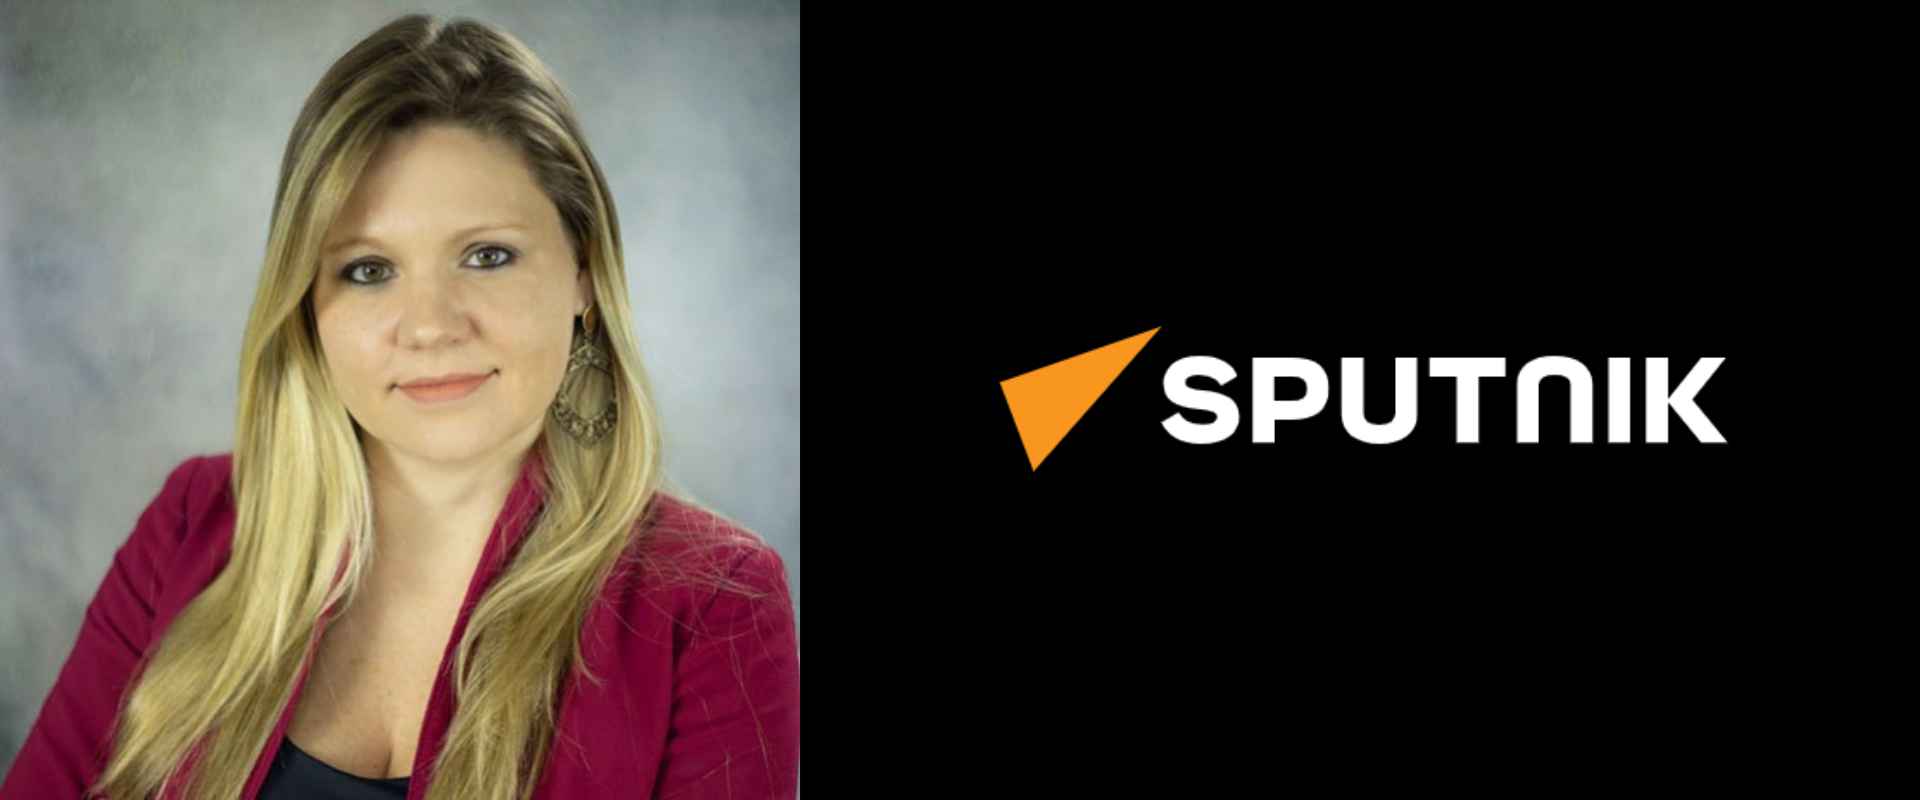 Em contribuição ao Sputnik, a profª de Marketing e Negócios Internacionais, Ariane Roder, comenta sobre os desdobramentos do 7 de setembro.